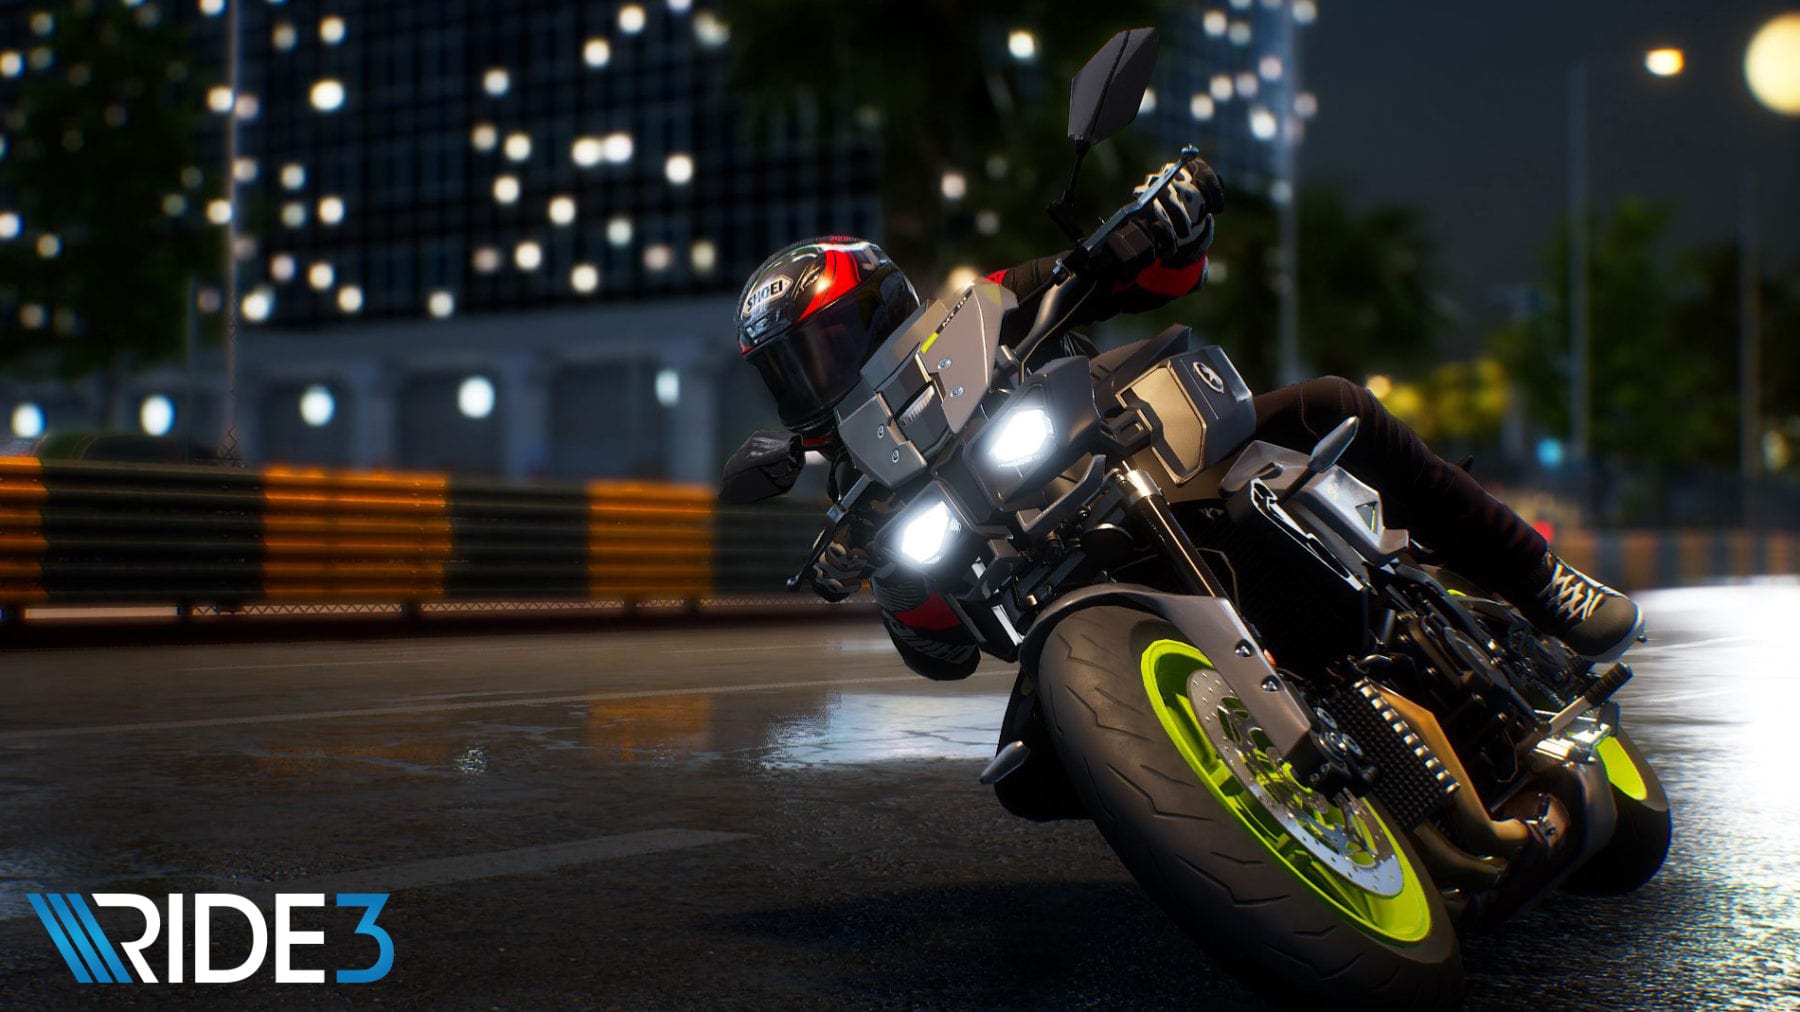 El último tráiler de Ride 3 presenta características de personalización